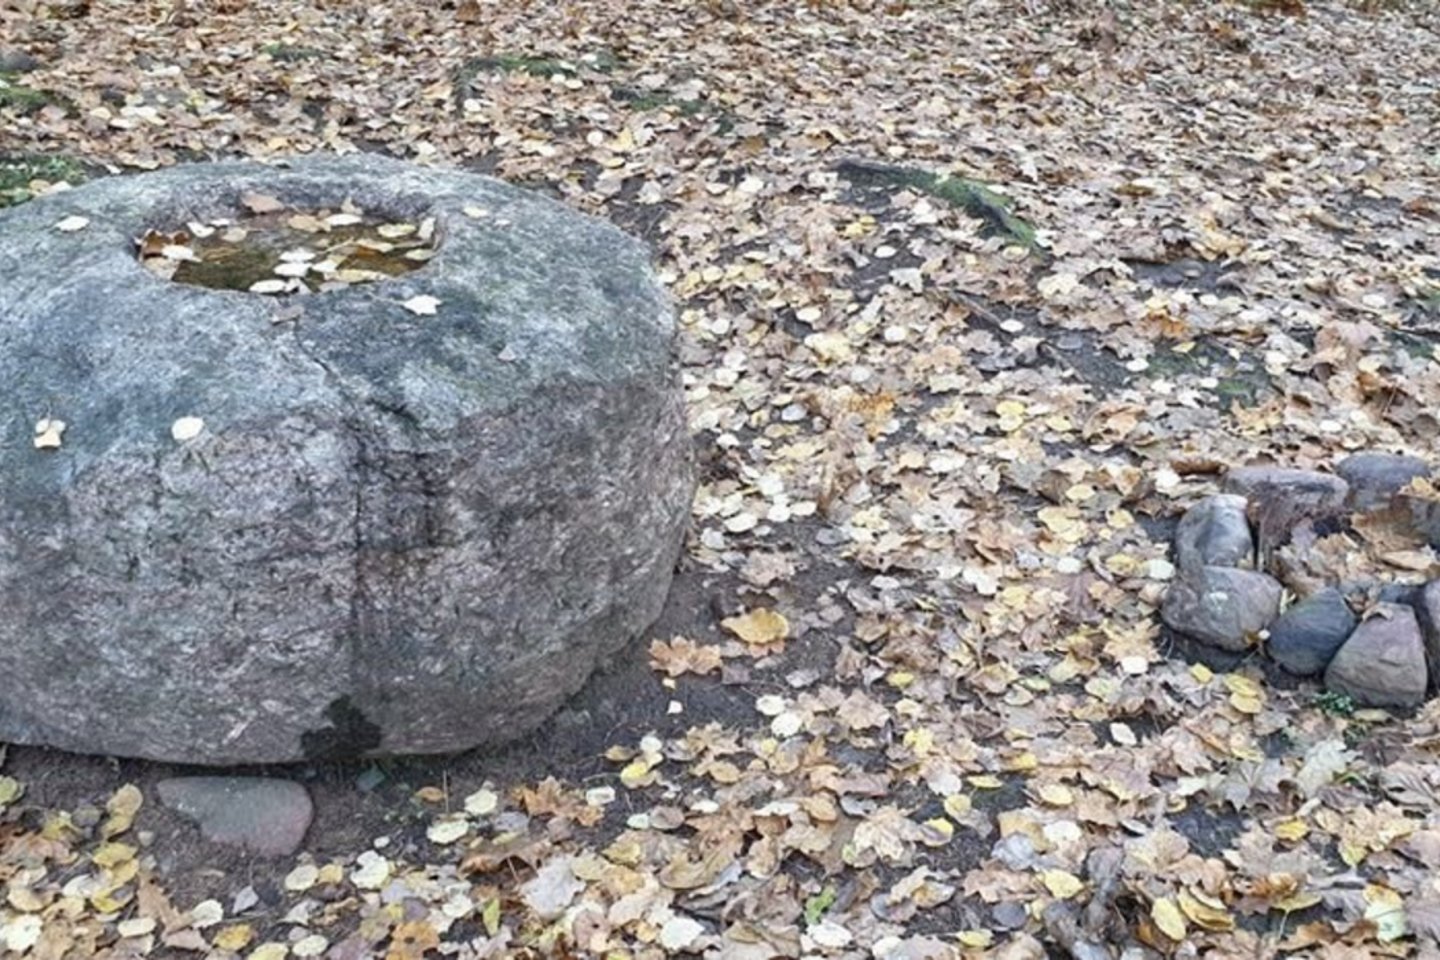  Lūžų akmenyje ryškios skilimo žymės, 2019 m. Gražutės regioninio parko nuotrauka.<br> KPD nuotr.